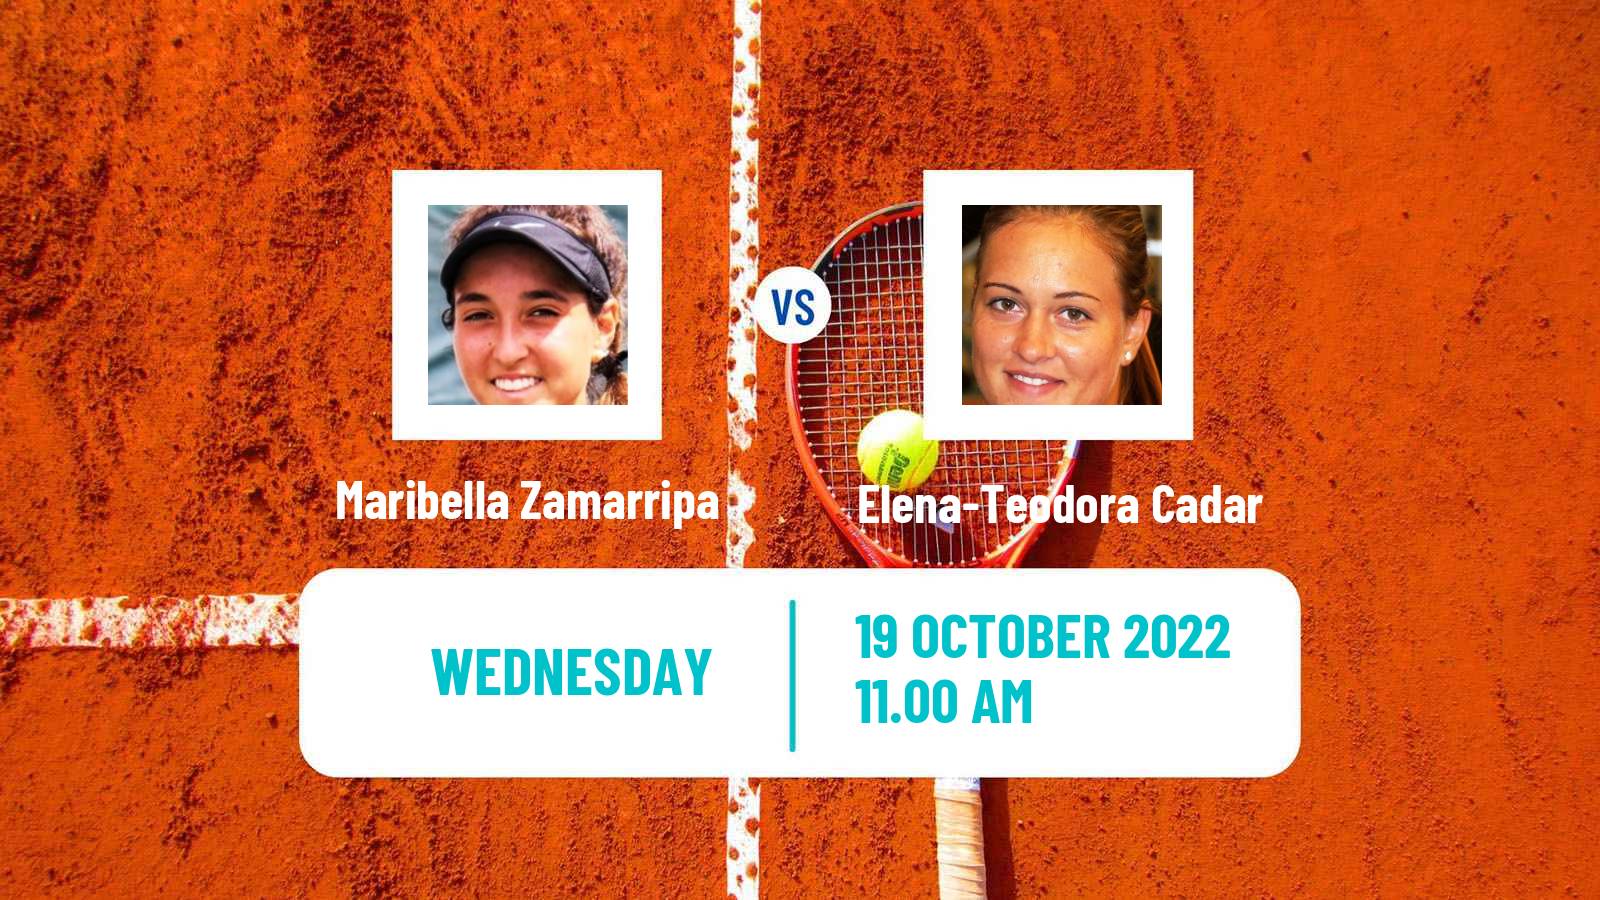 Tennis ITF Tournaments Maribella Zamarripa - Elena-Teodora Cadar